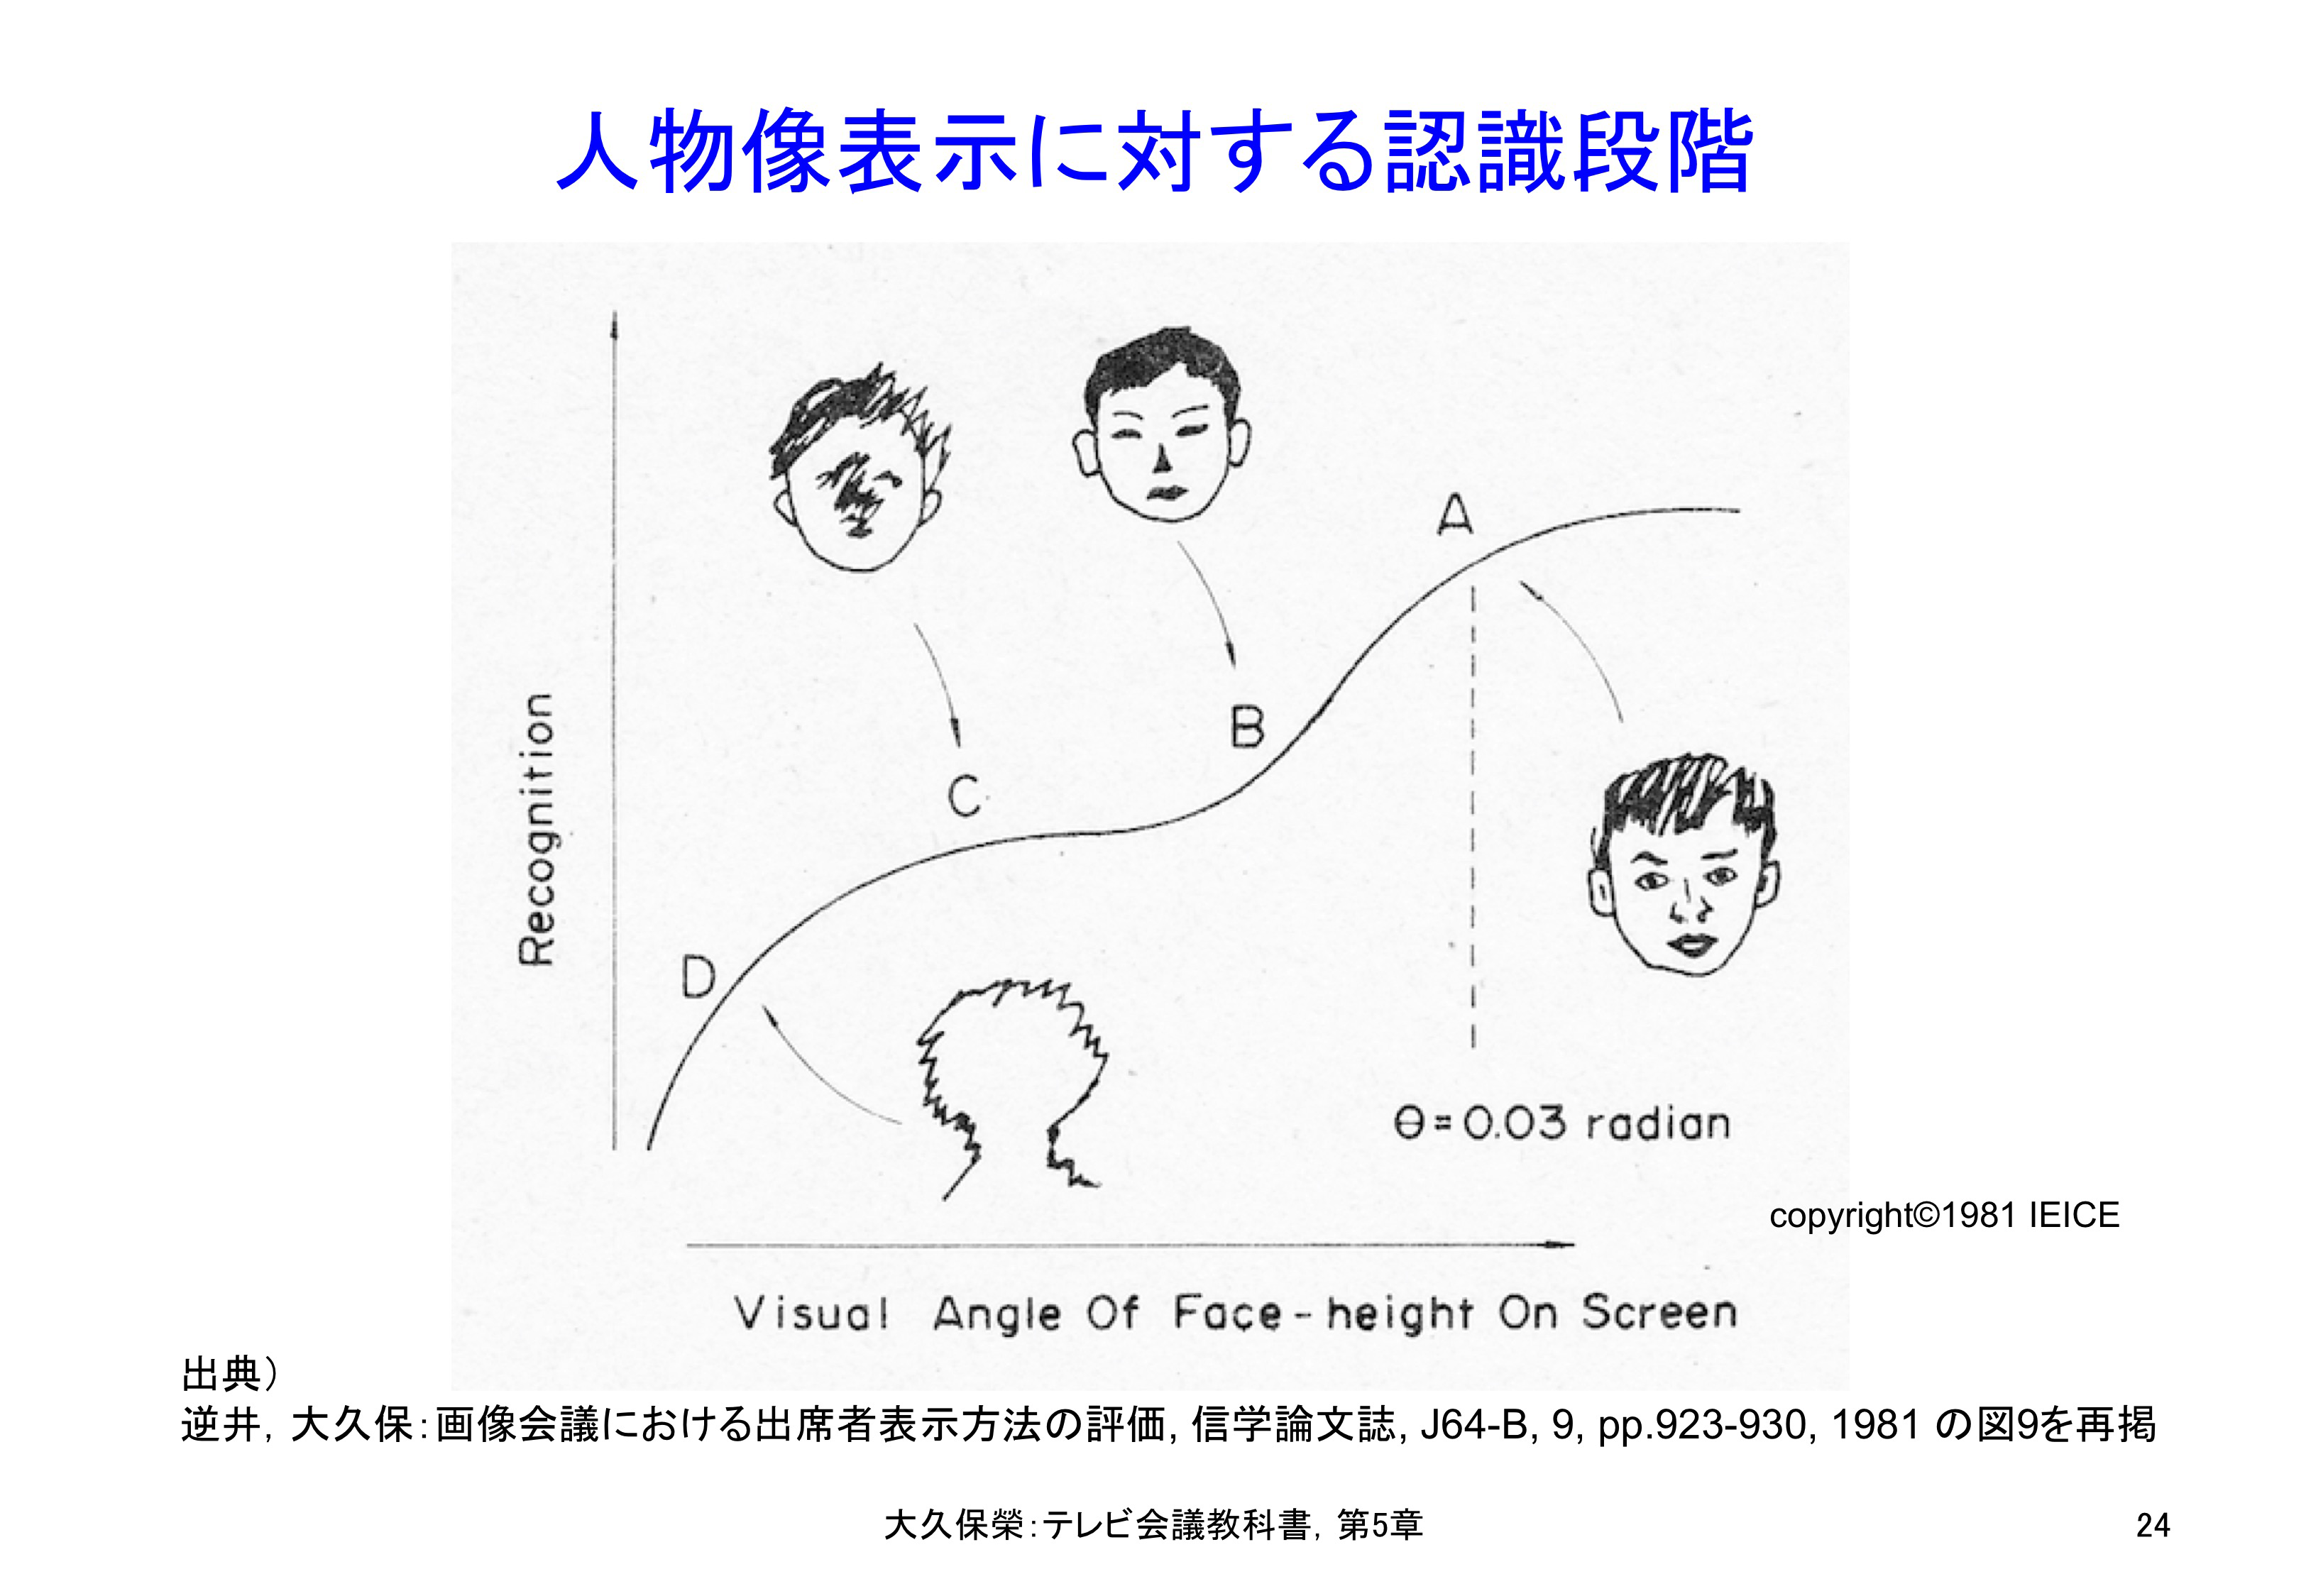 図5-24 人物像表示に対する認識段階